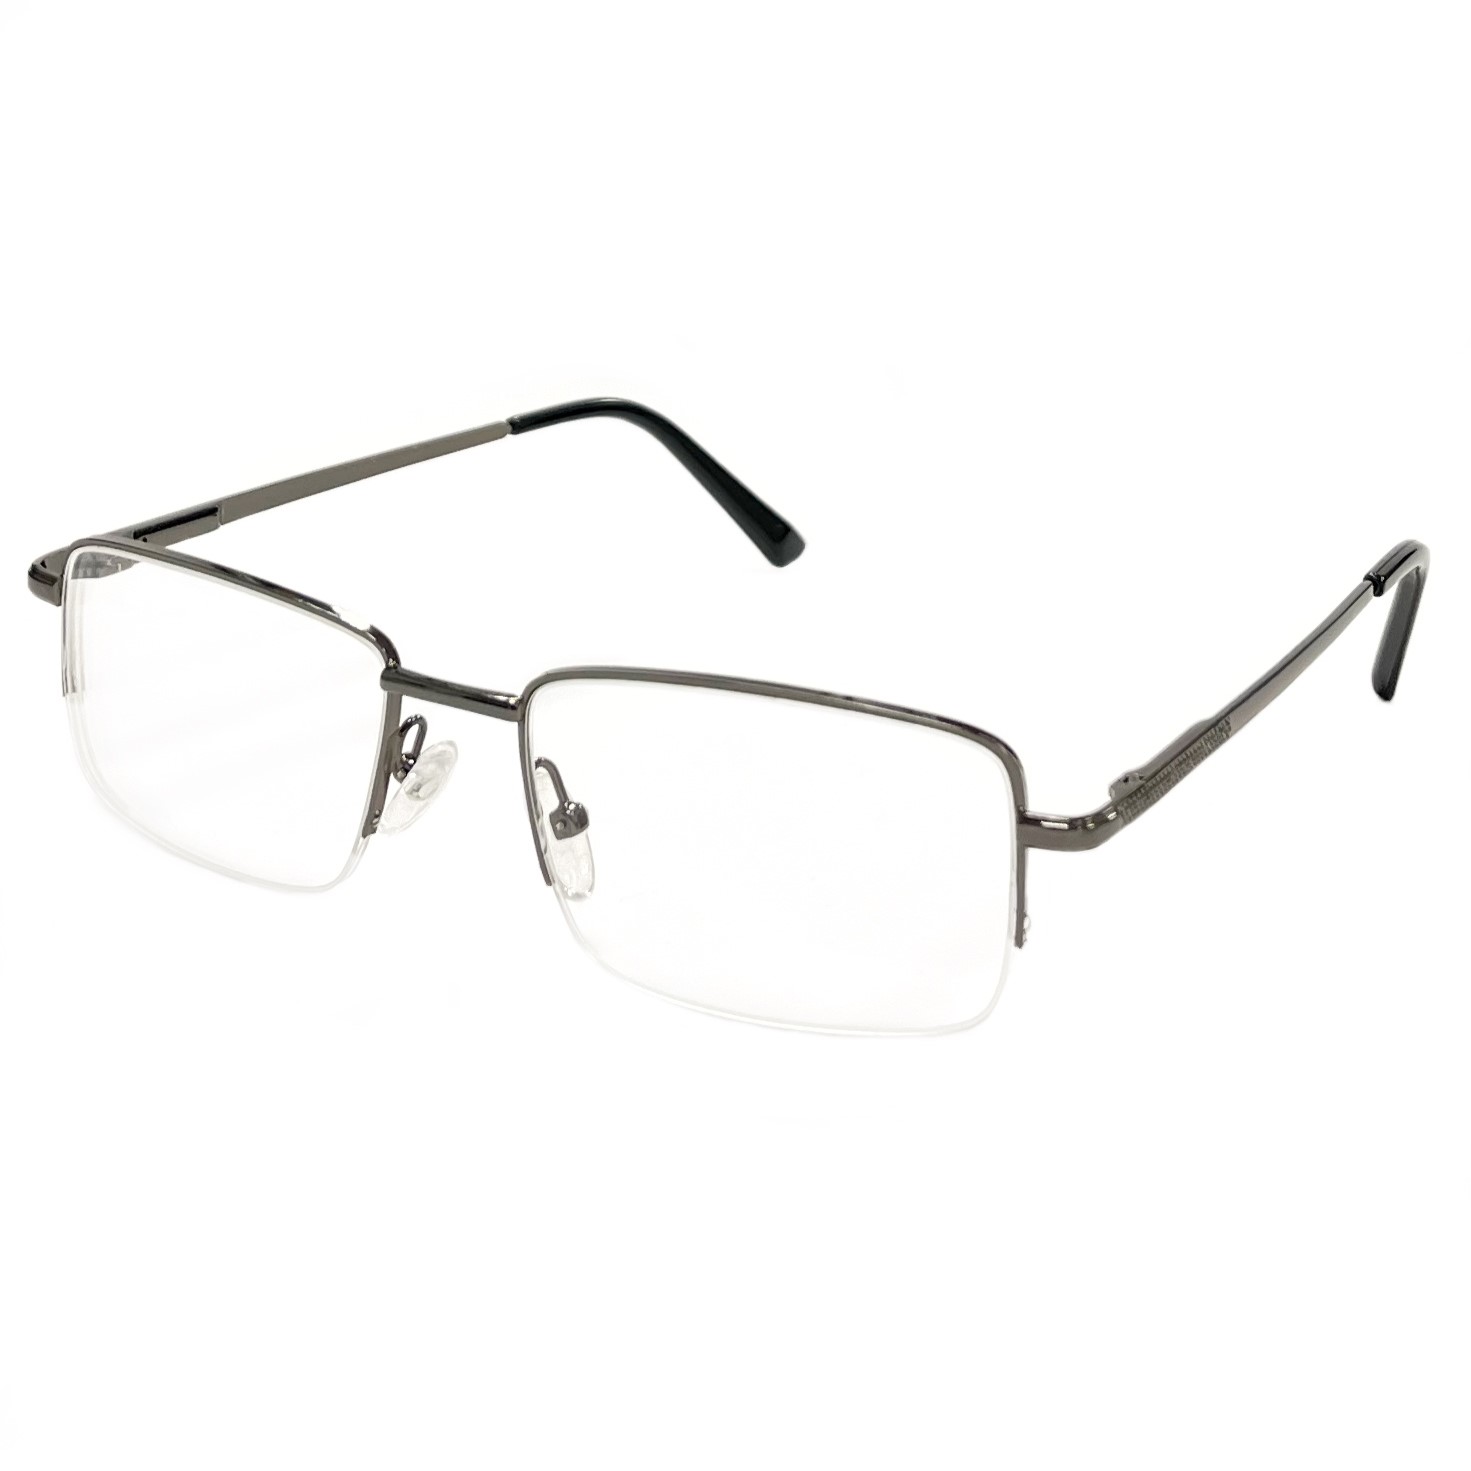 Купить Готовые очки для зрения Fedrov с диоптриями мужские корригирующие -4.0